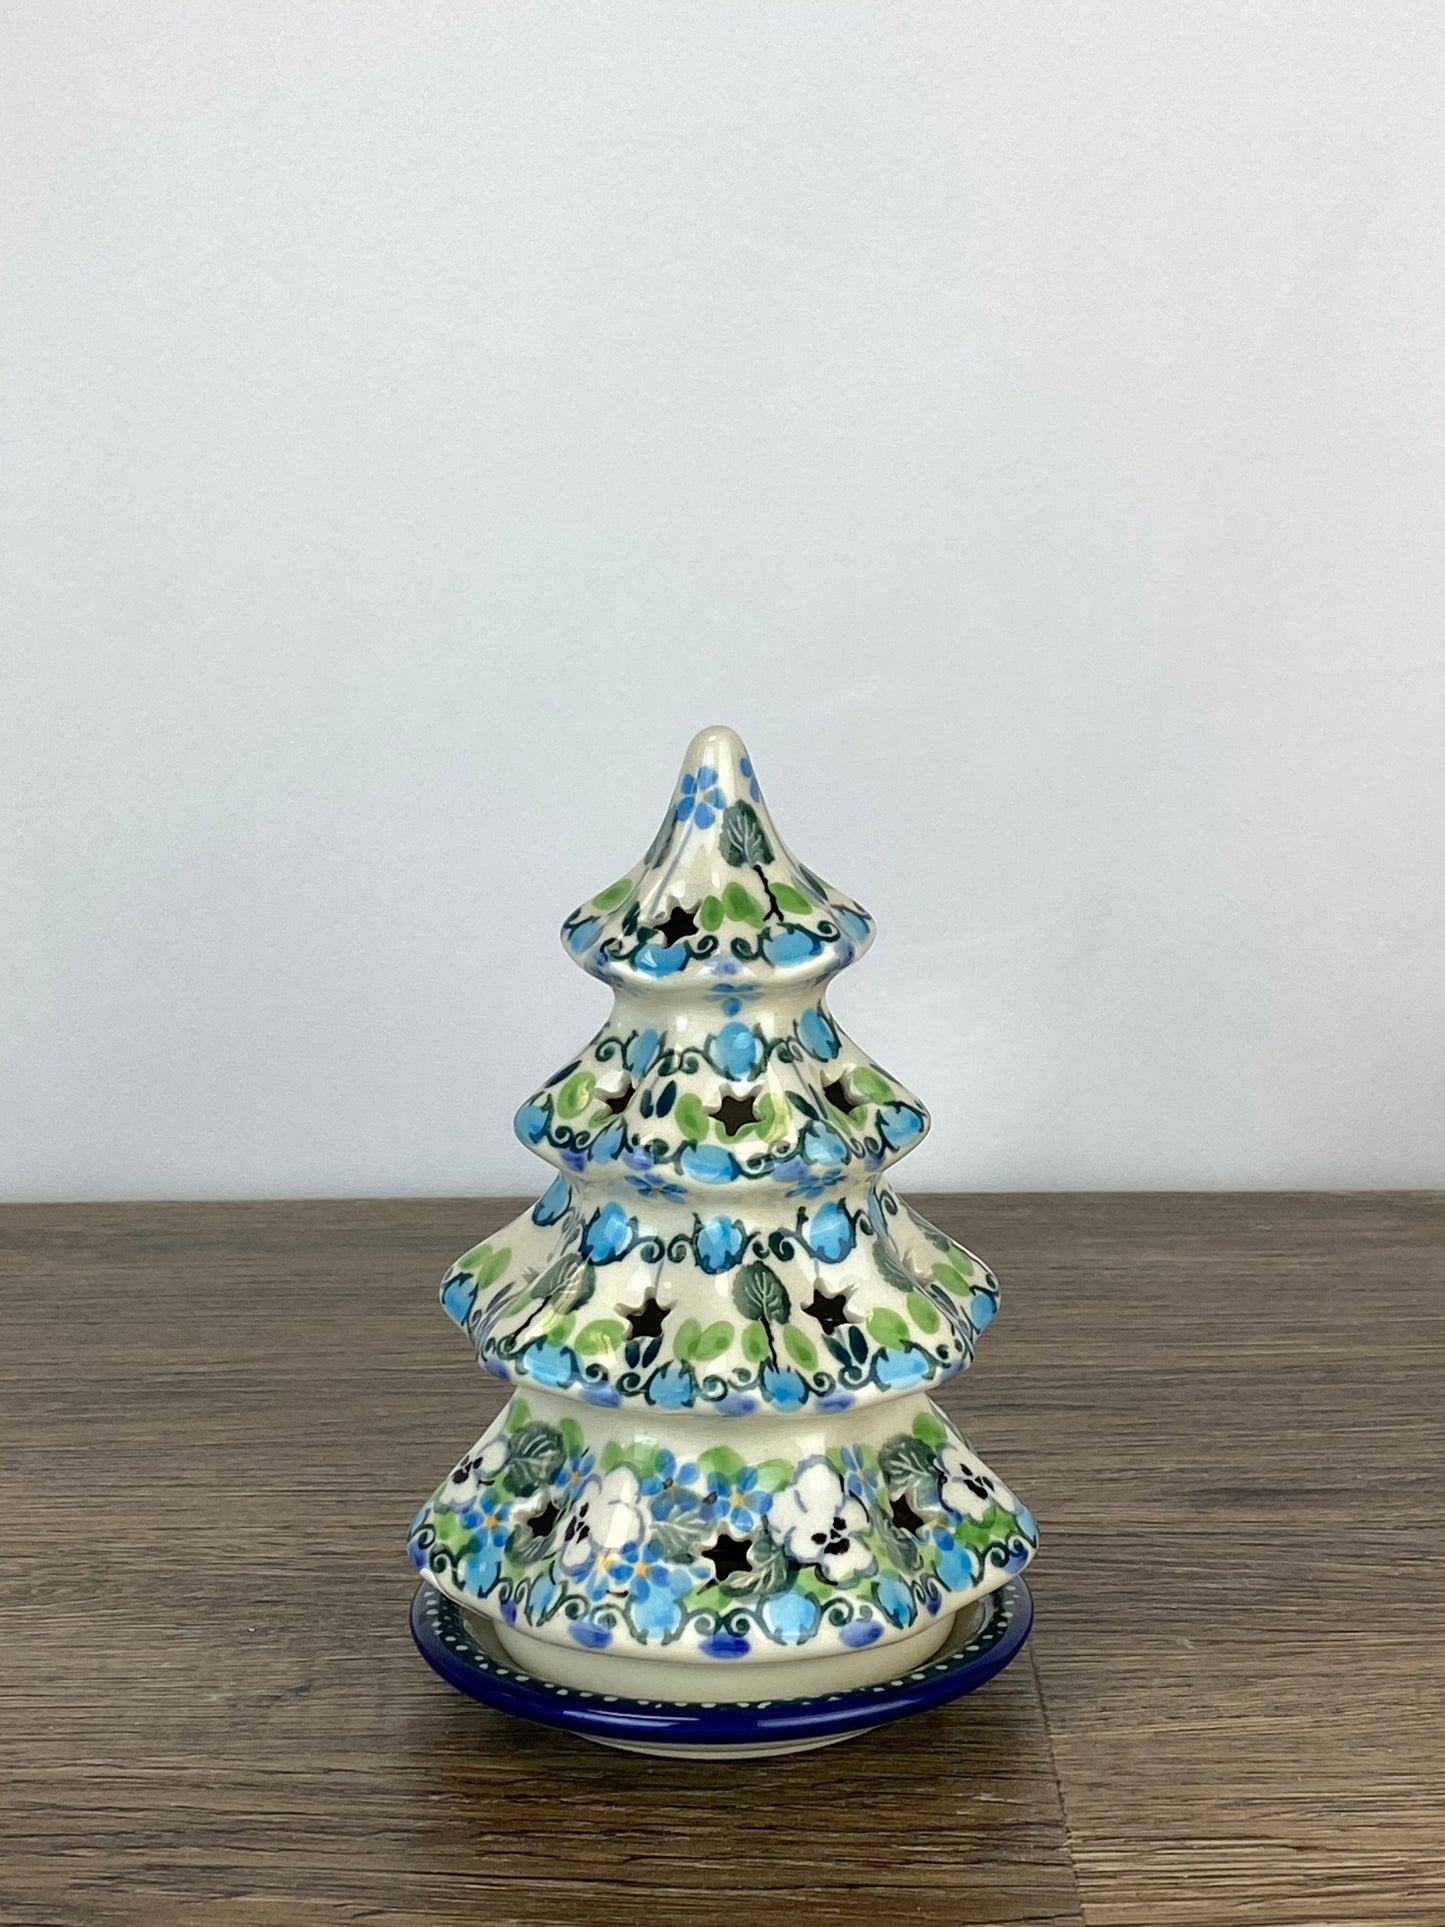 Small 6" Unikat Christmas Tree - Shape 512 - Pattern U4795